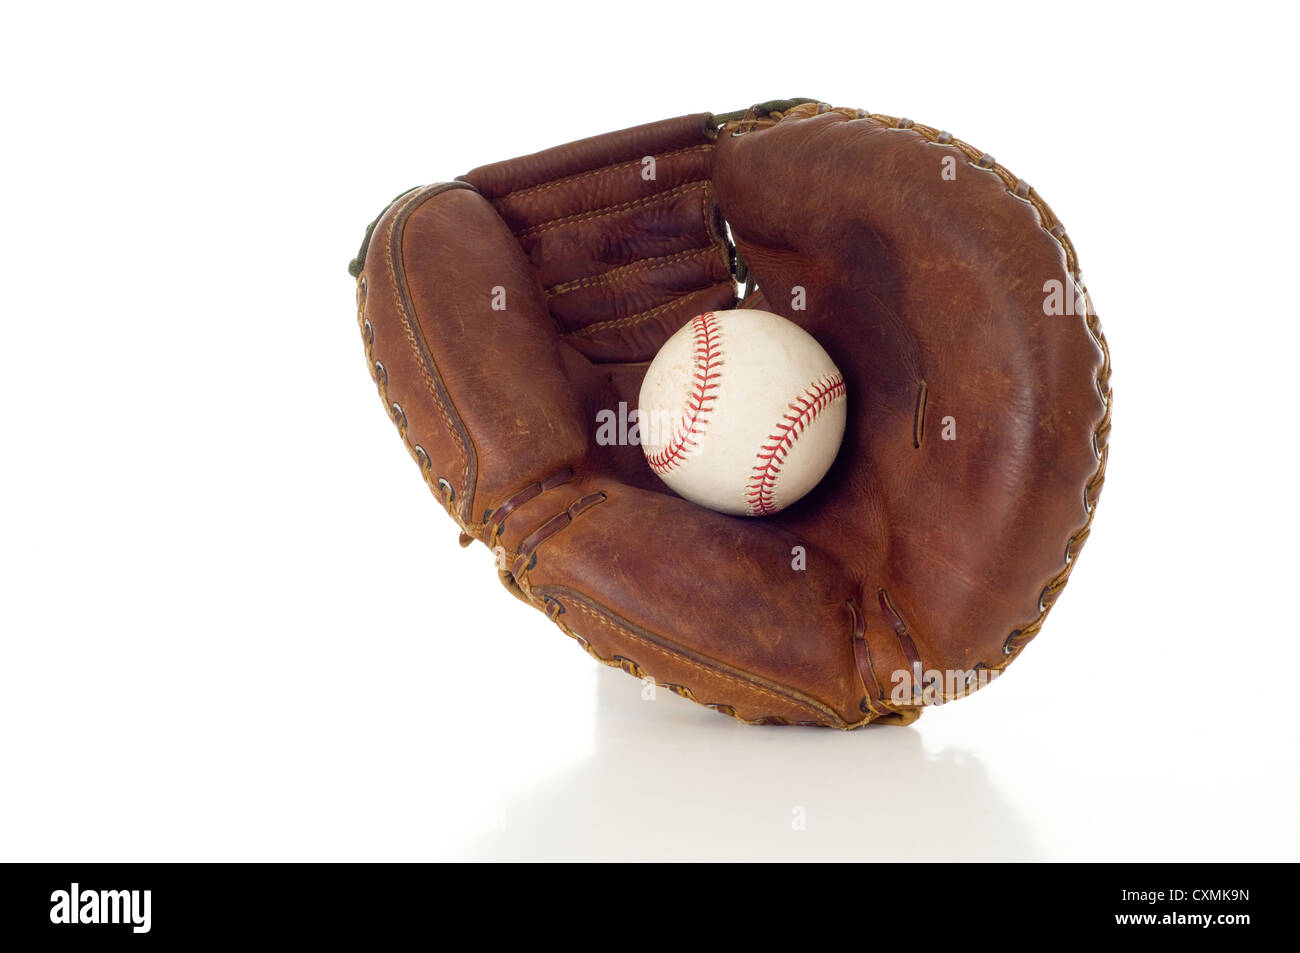 Un base-ball en cuir marron avec un gant de baseball en cuir blanc sur un fond blanc avec copie espace Banque D'Images